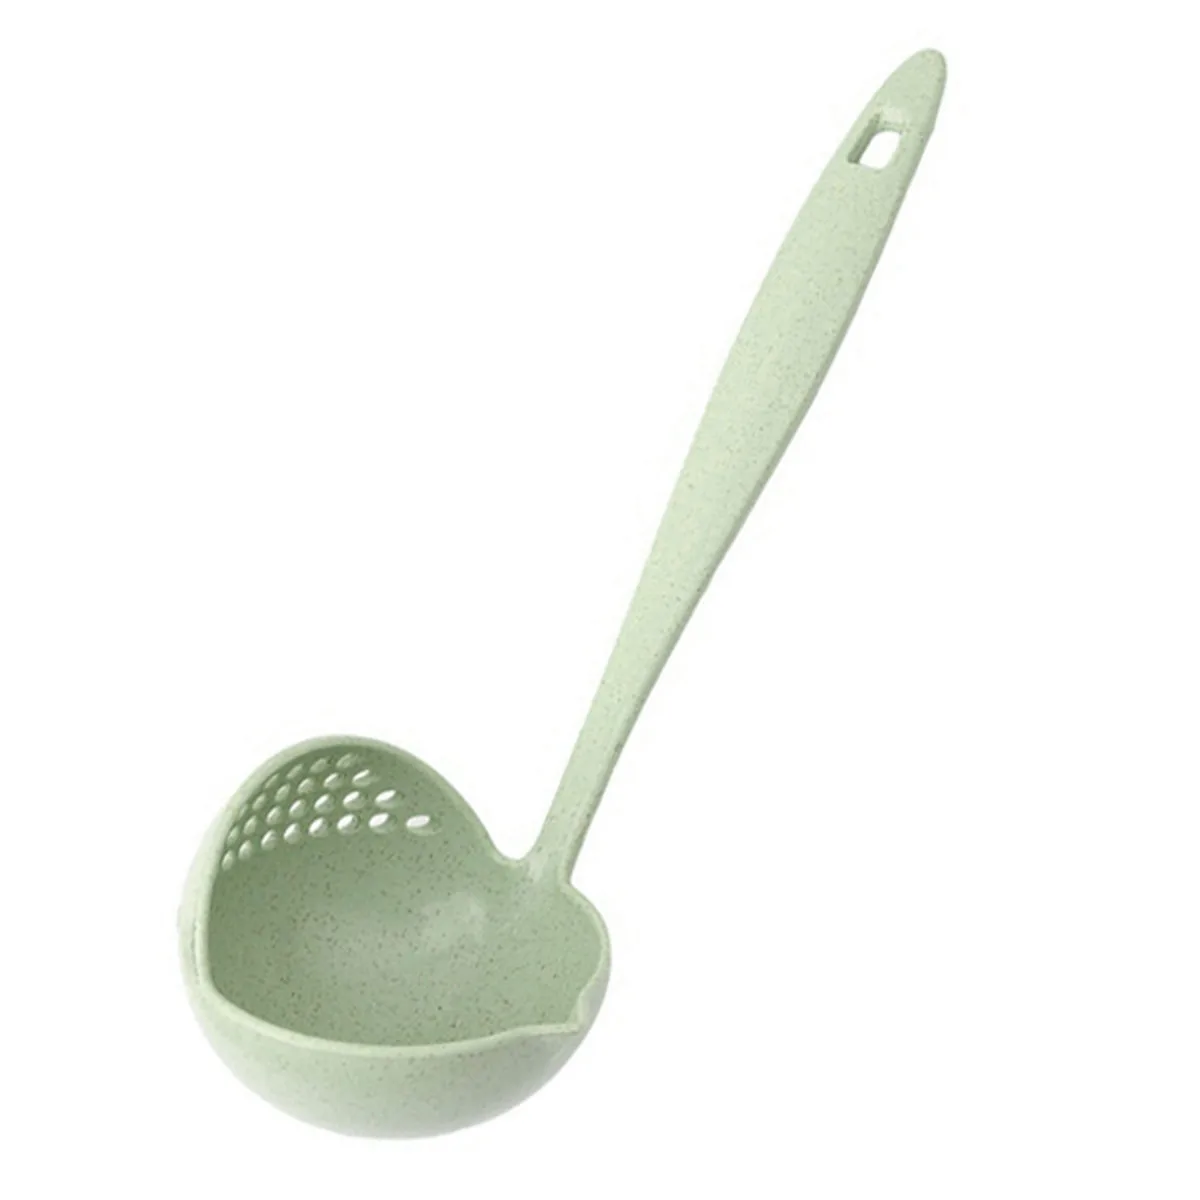 2 в 1 горячий горшок посуда густой суп ложка с фильтром скиммер кухонная посуда длинная ручка дуршлаг - Цвет: Green